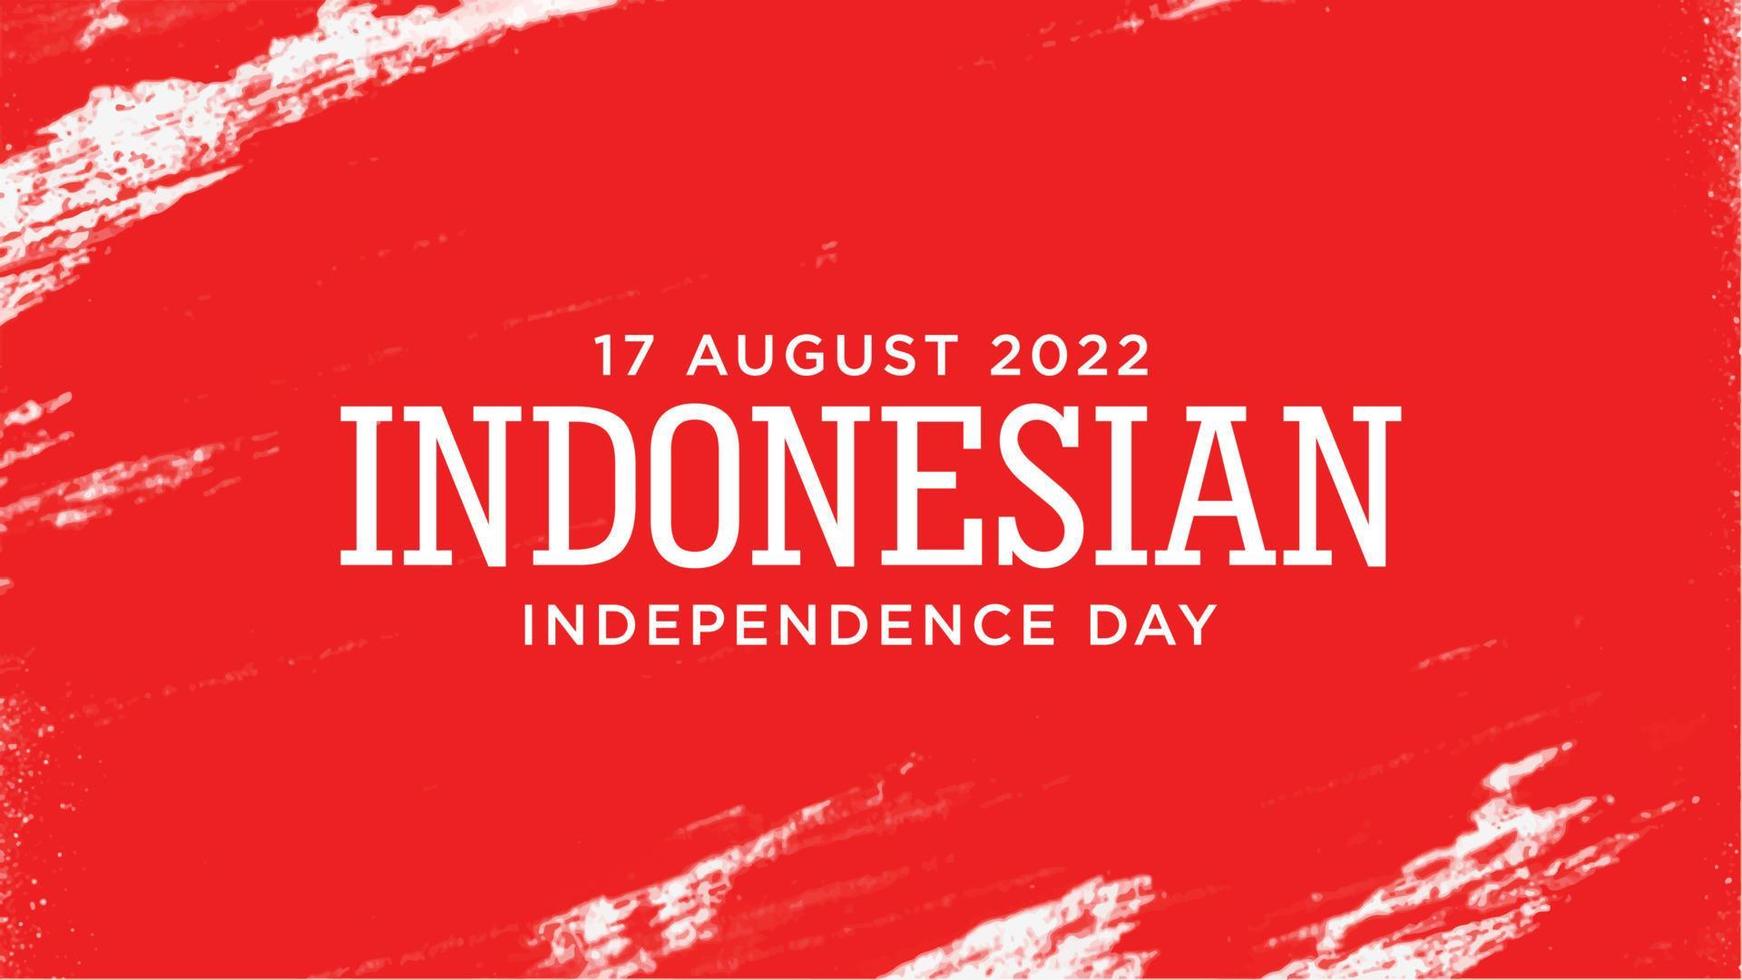 dia da independência da indonésia com design de fundo grunge vermelho. texto indonésio significa é longevidade indonésia. bom modelo para design do dia da independência da indonésia. vetor